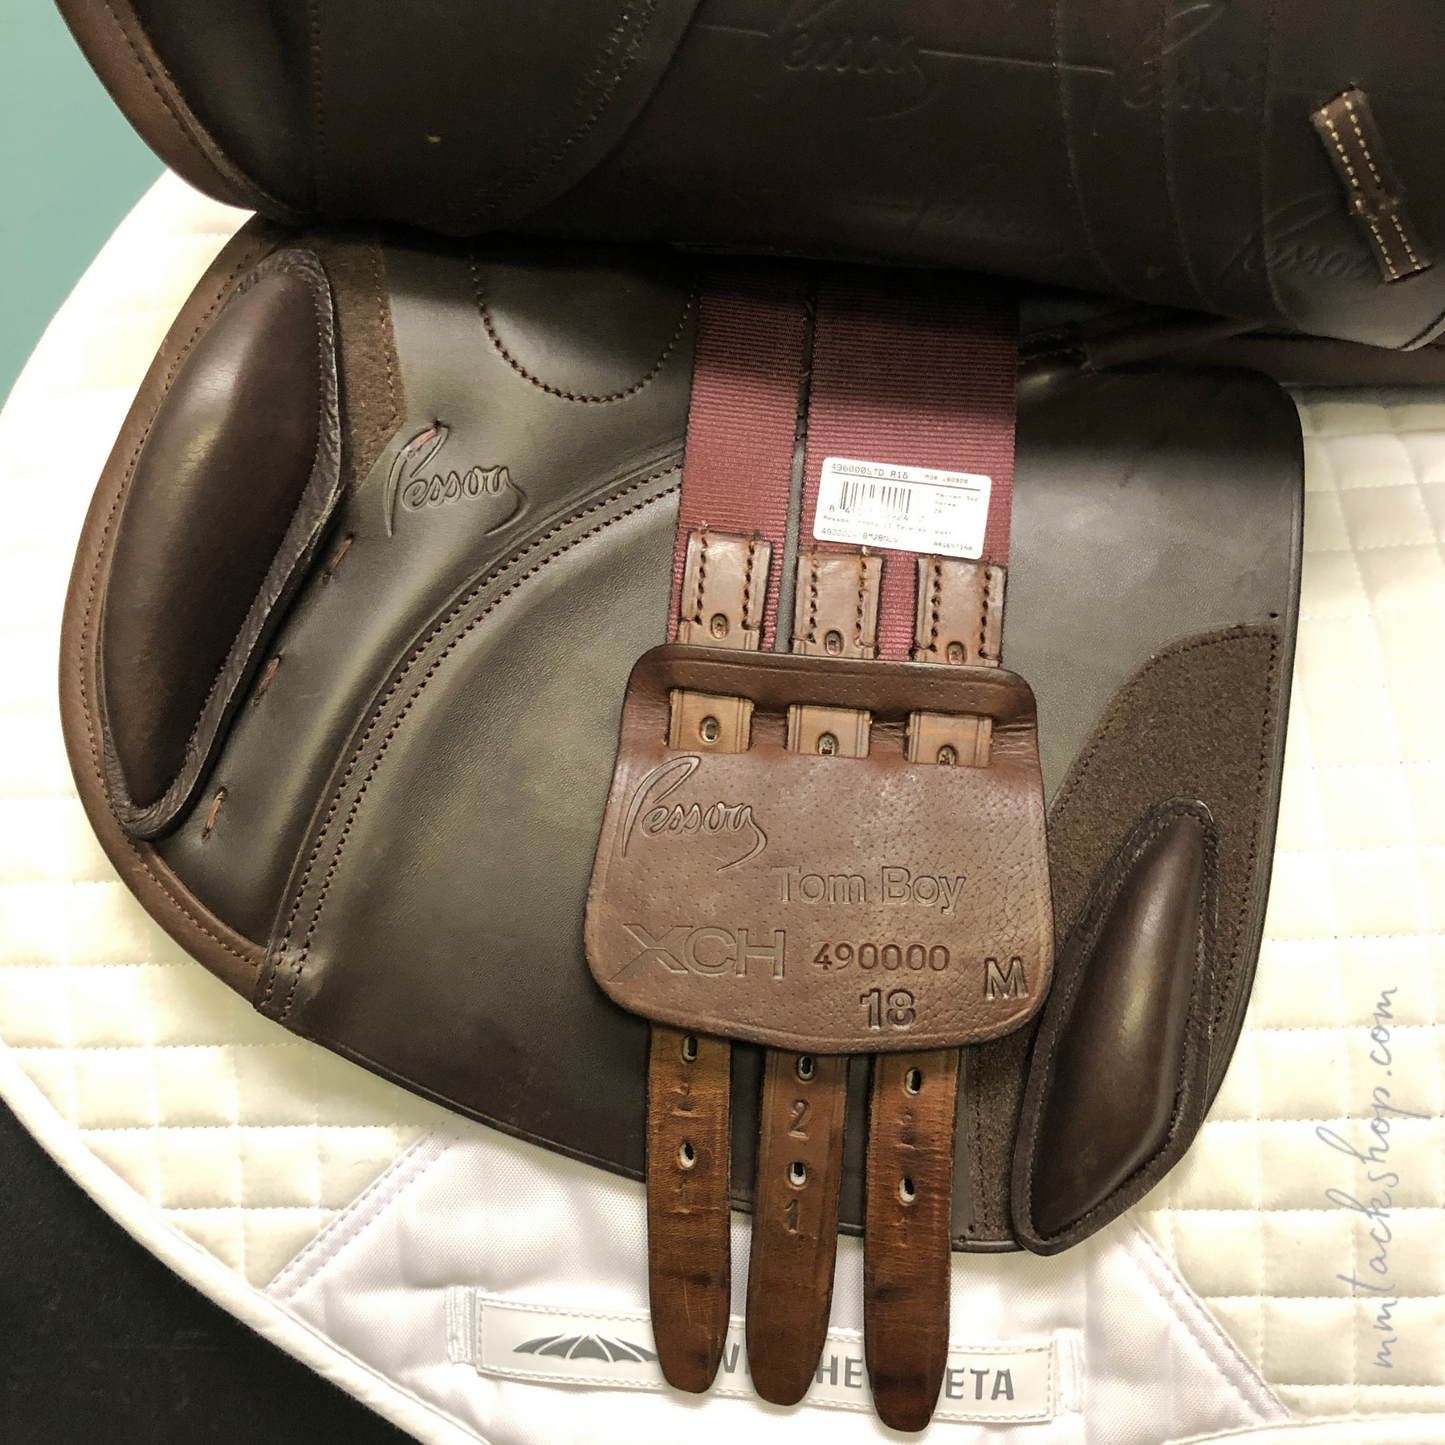 DEMO Pessoa® Tomboy II Covered Leather Close Contact Saddle